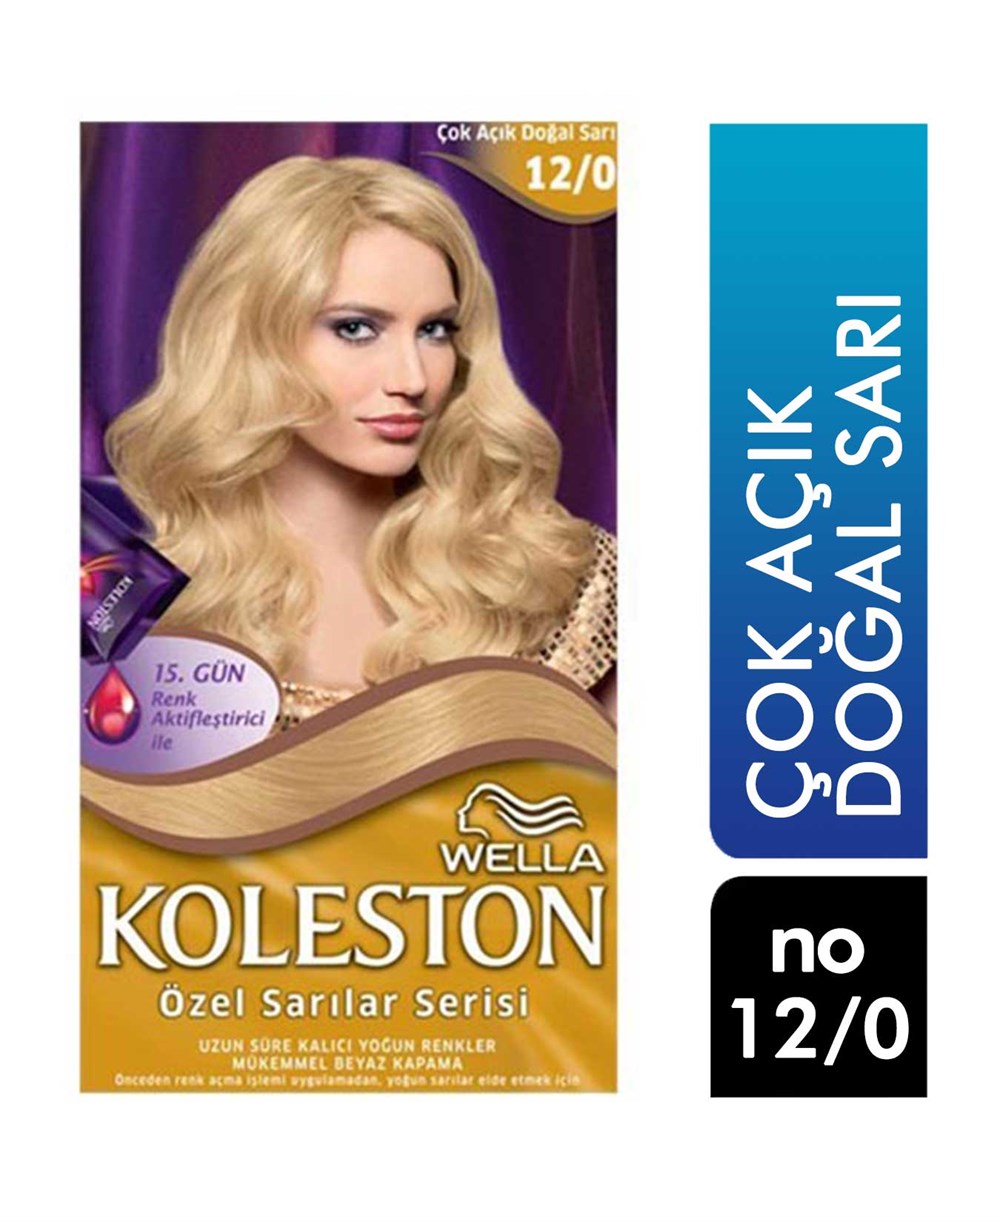 Koleston Set Saç Boyası 12.0 Cok Açık Dogal Sarı | Cossta Cosmetic Station